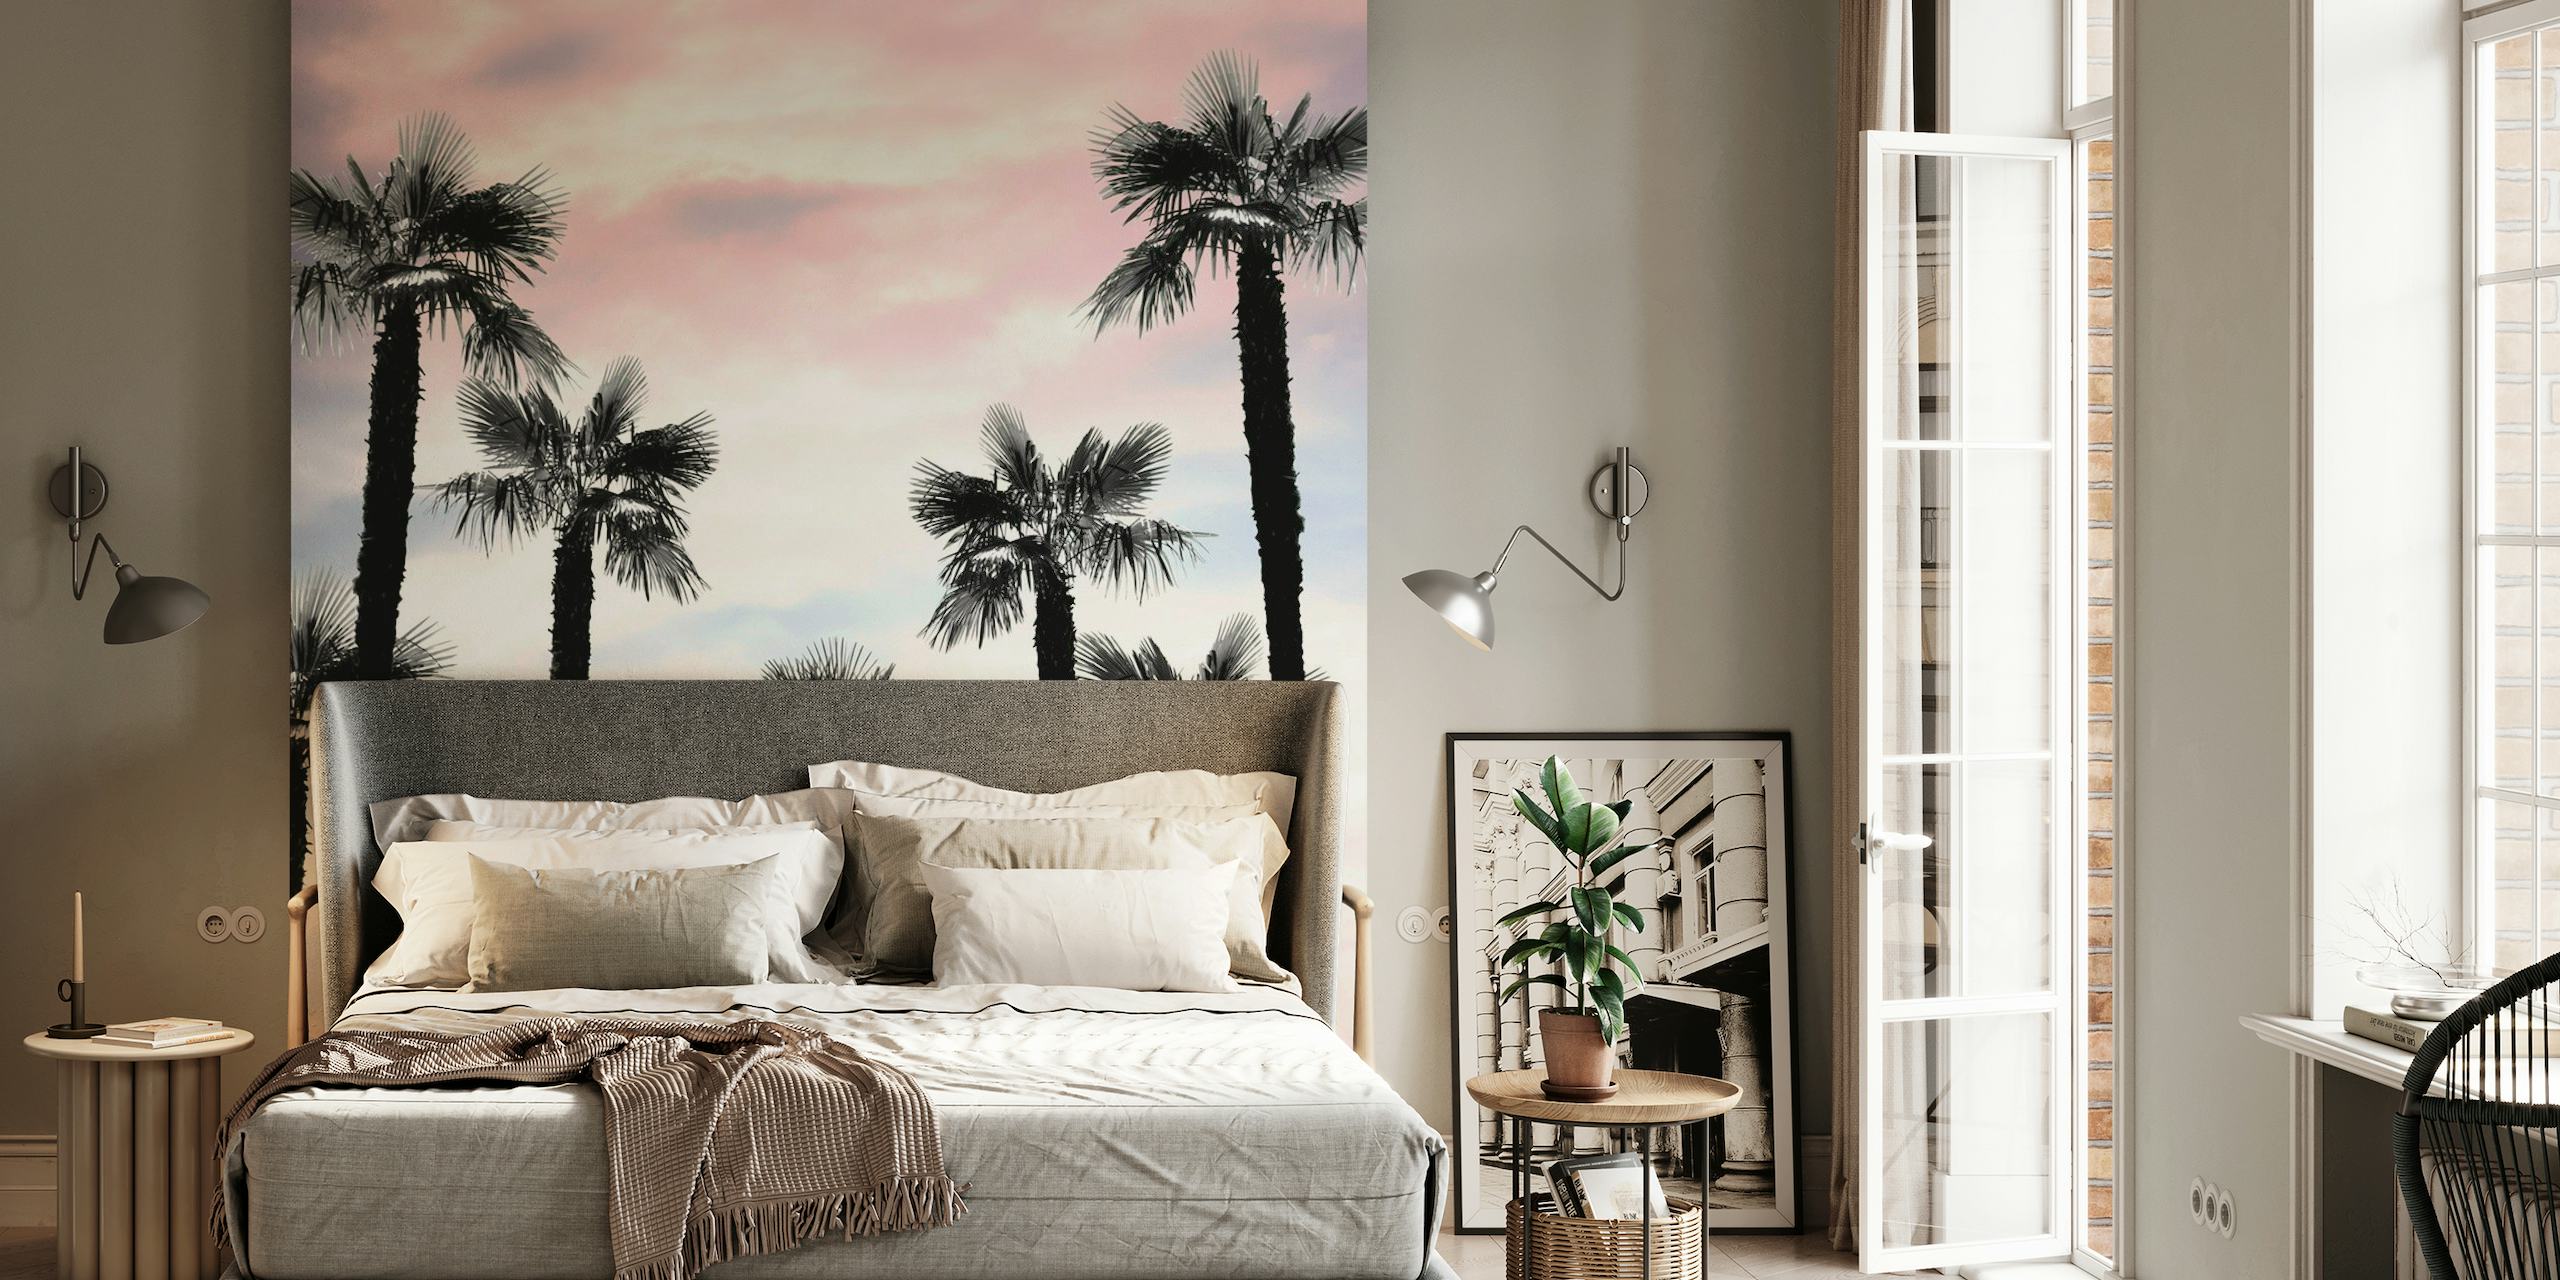 Tropical Palm Trees Dream 1 papel pintado